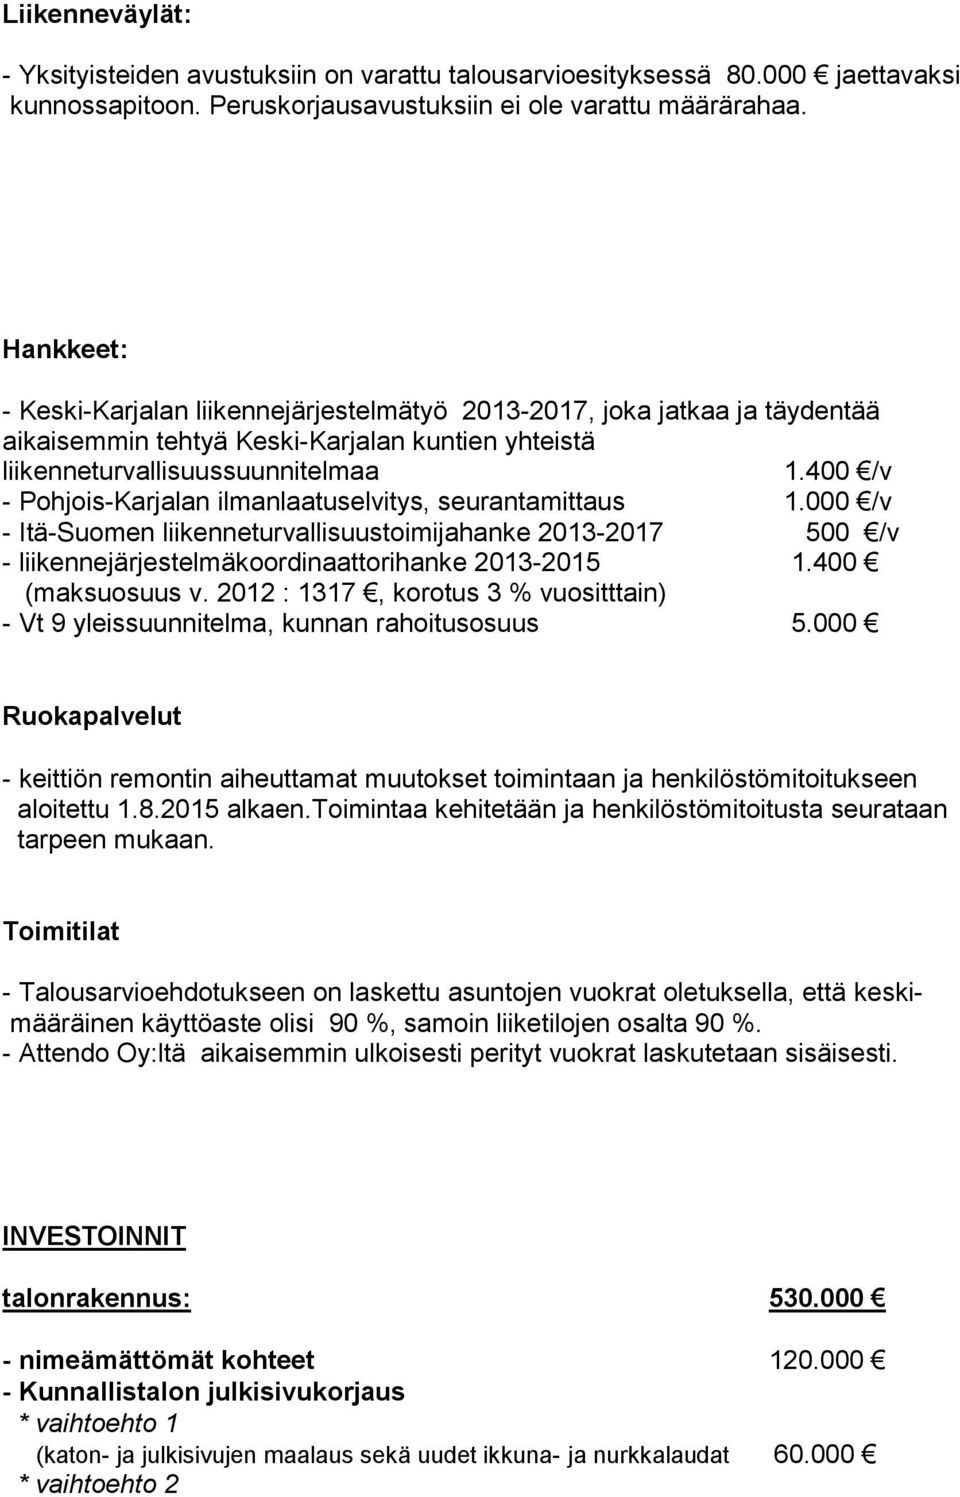 400 /v - Pohjois-Karjalan ilmanlaatuselvitys, seurantamittaus 1.000 /v - Itä-Suomen liikenneturvallisuustoimijahanke 2013-2017 500 /v - liikennejärjestelmäkoordinaattorihanke 2013-2015 1.